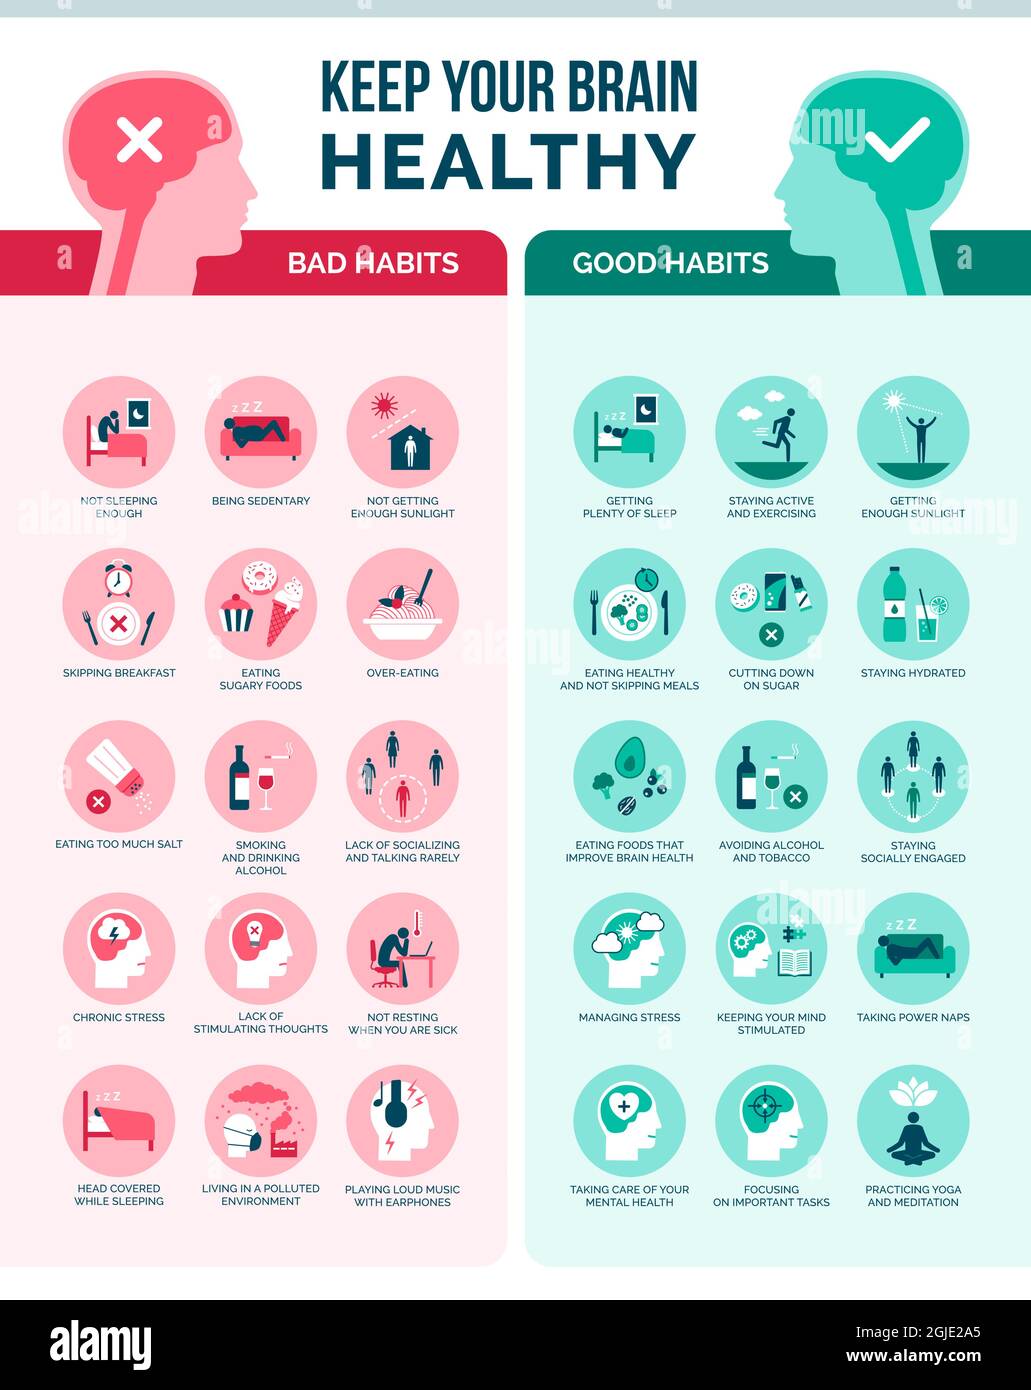 Mantenga su cerebro sano: Malos hábitos y buenos hábitos, infografía de atención médica y prevención Ilustración del Vector